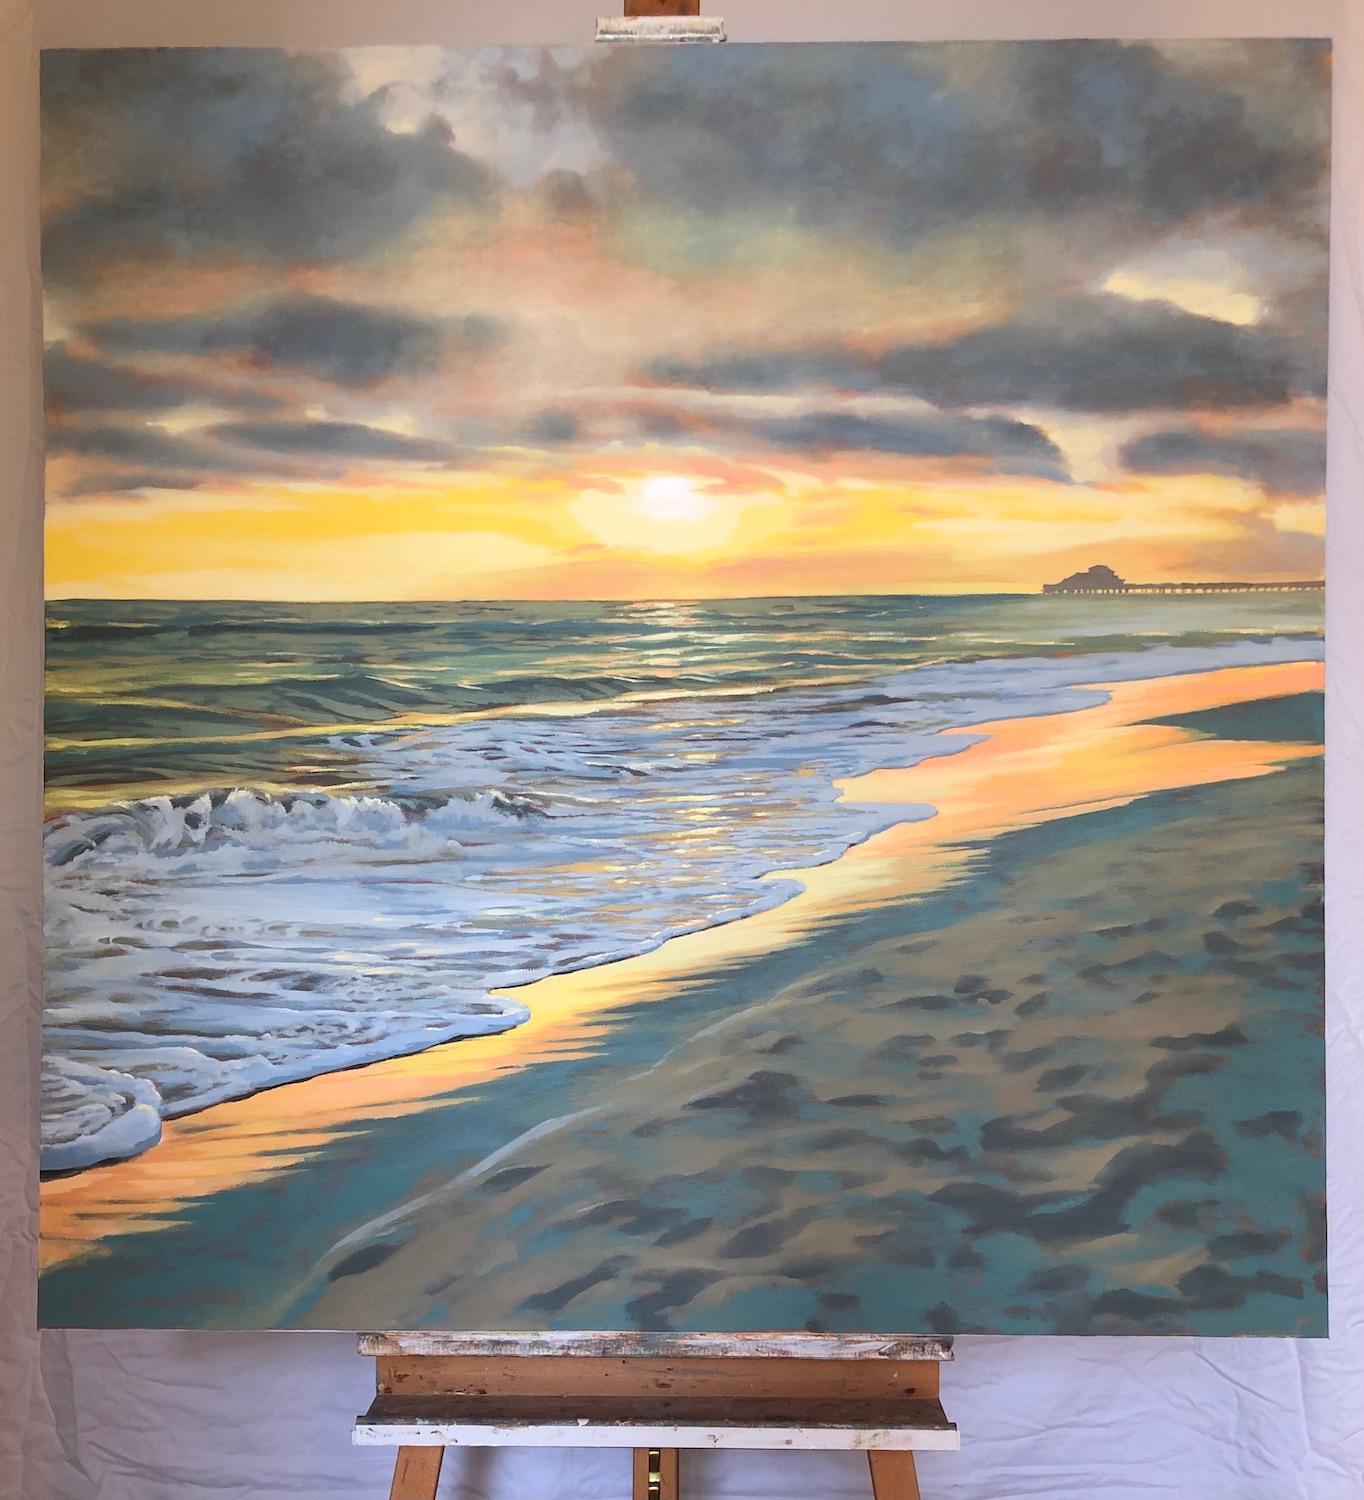 <p>Commentaires de l'artiste<br>Les derniers rayons du soleil apparaissent dans le saisissant paysage marin réaliste de l'artiste Jesse Aldana. Il capture l'éclair vert, un moment notoirement éphémère au coucher du soleil. Des vagues gracieuses